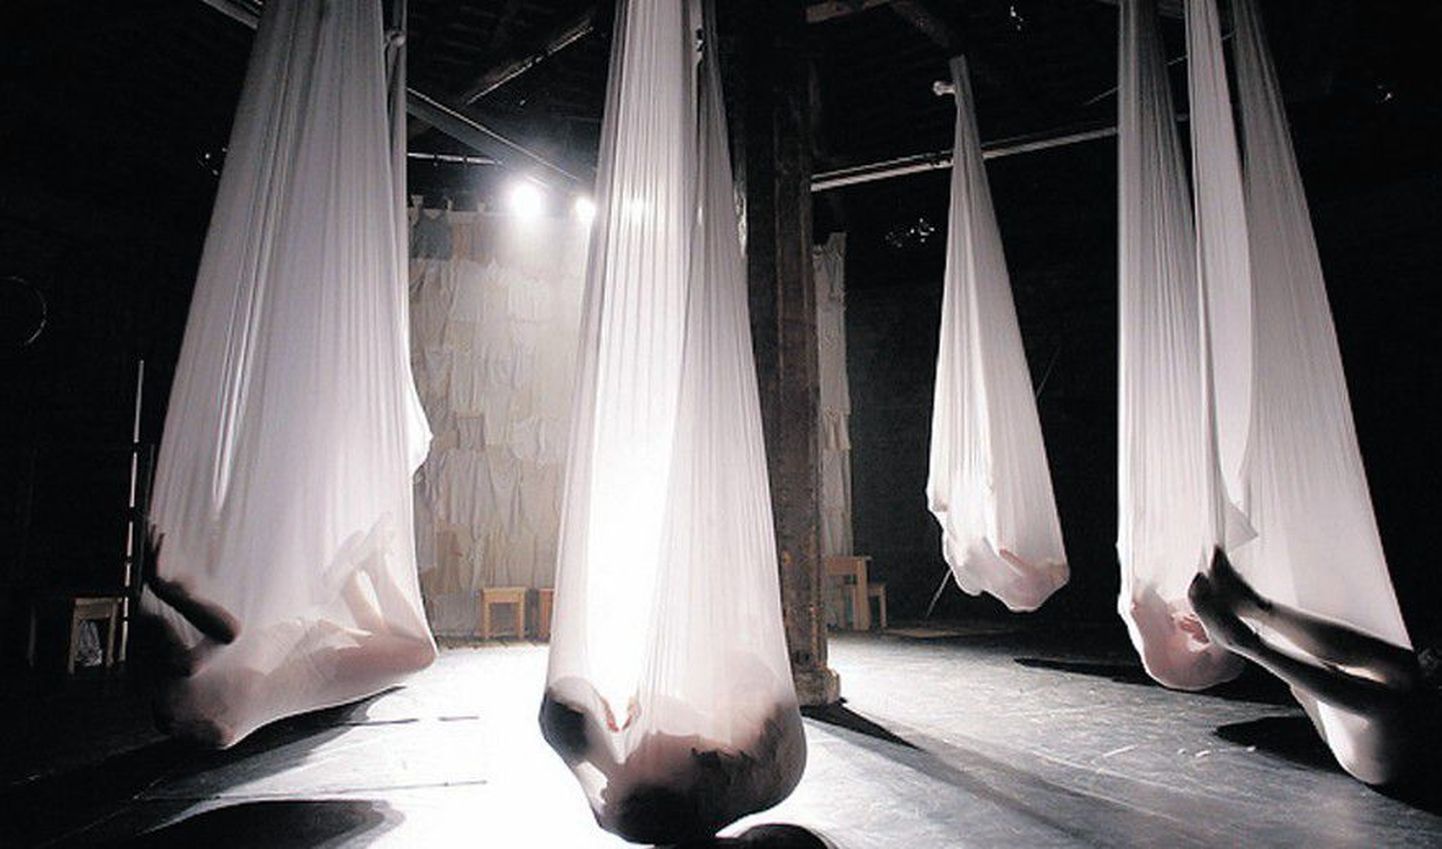 Спектакль «Жизель» необыкновенно сложен физически: артисты кувыркаются, извиваются в растягивающихся подвесных полупрозрачных белых мешках.